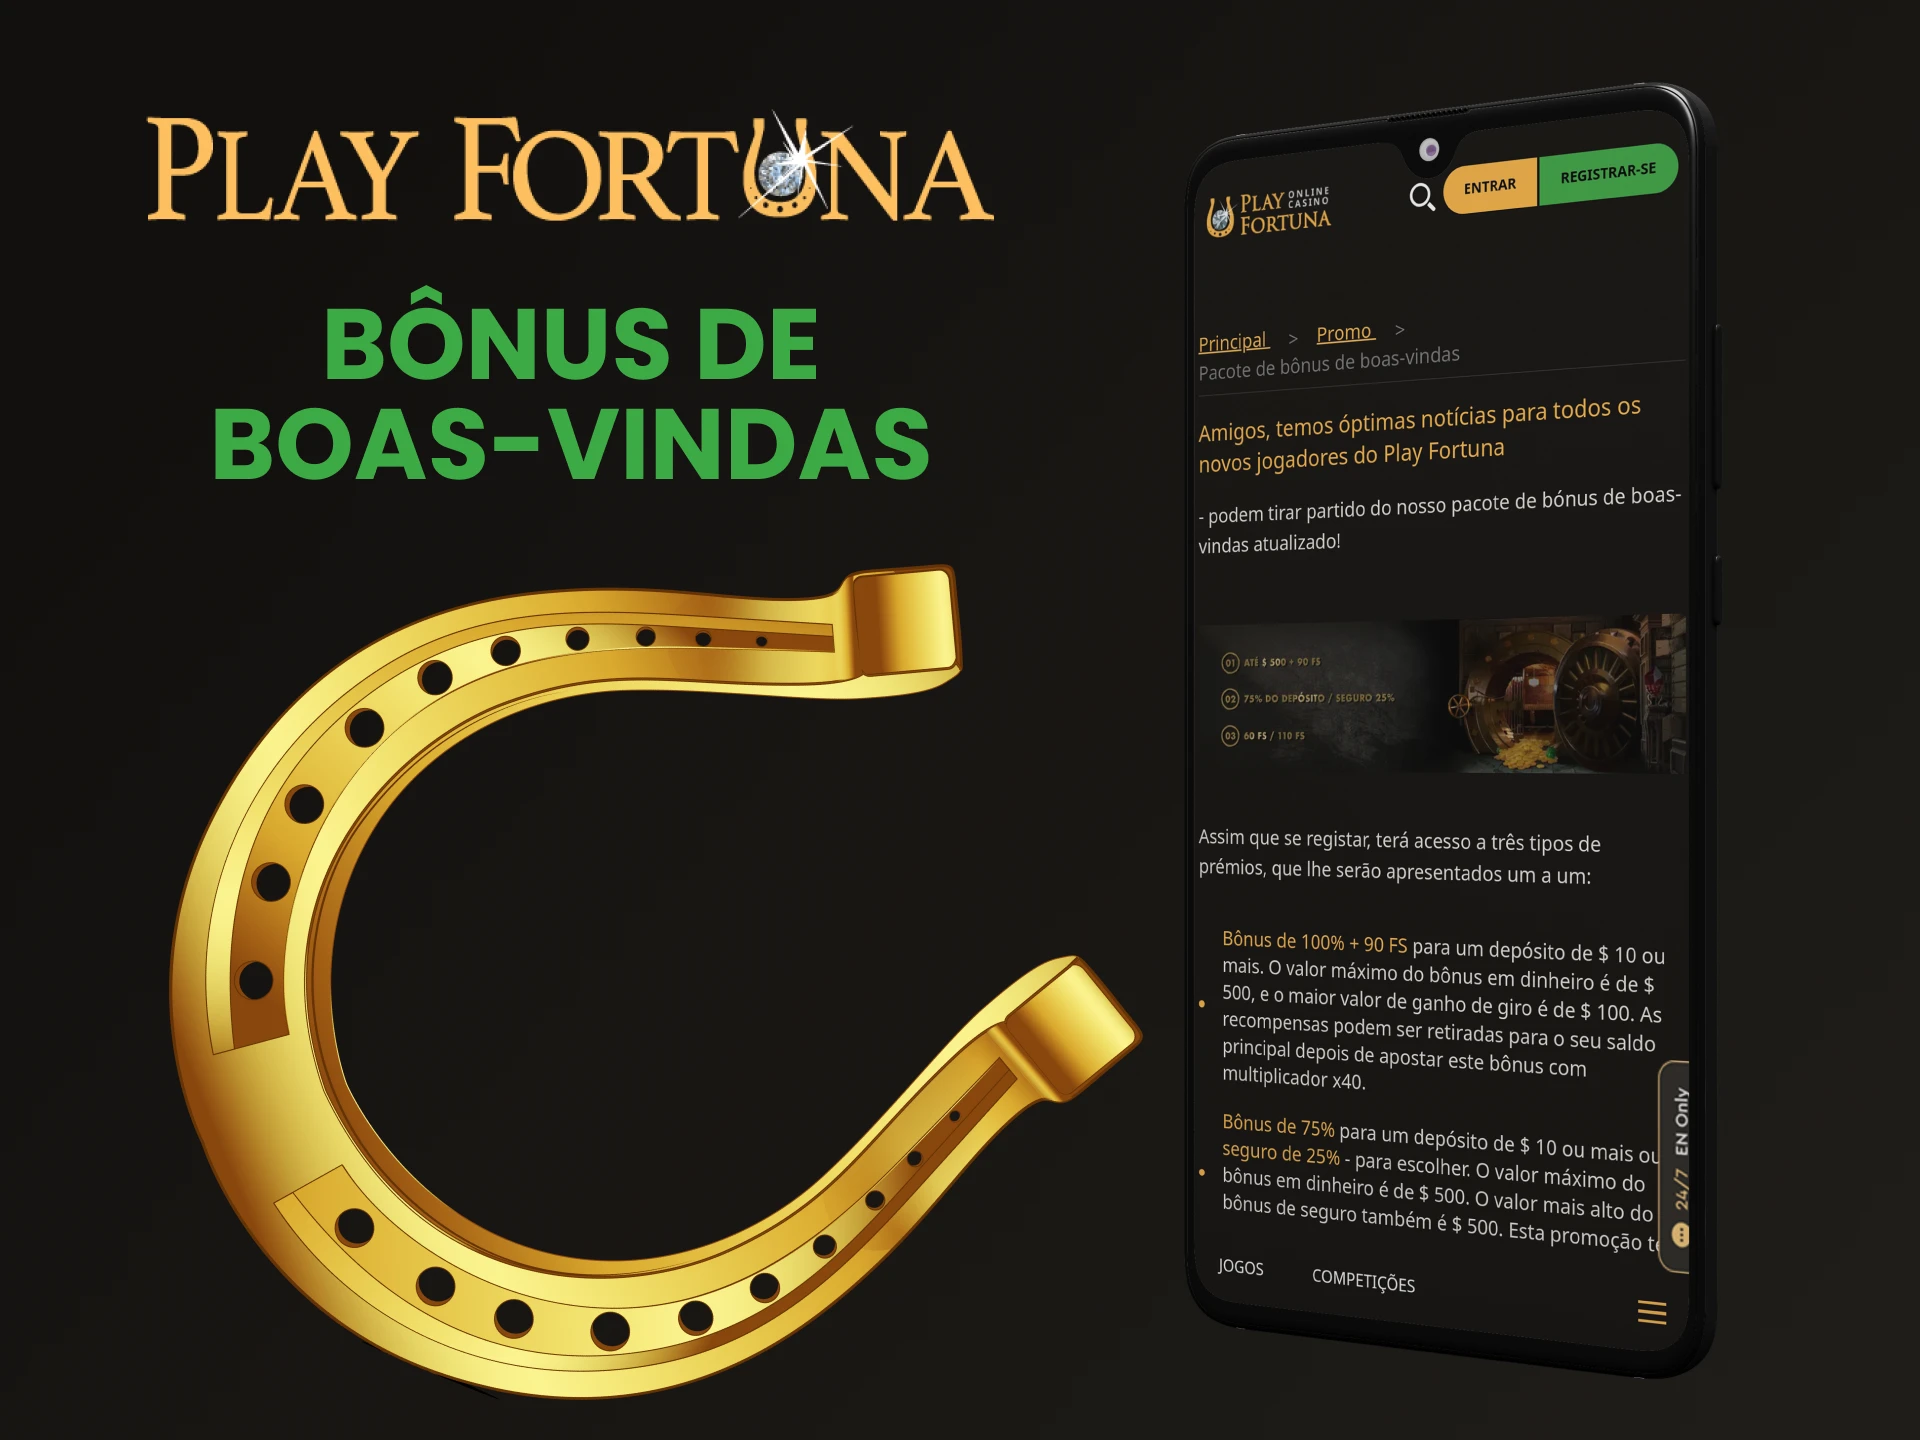 O Play Fortuna oferece um bônus de boas-vindas em seu aplicativo.